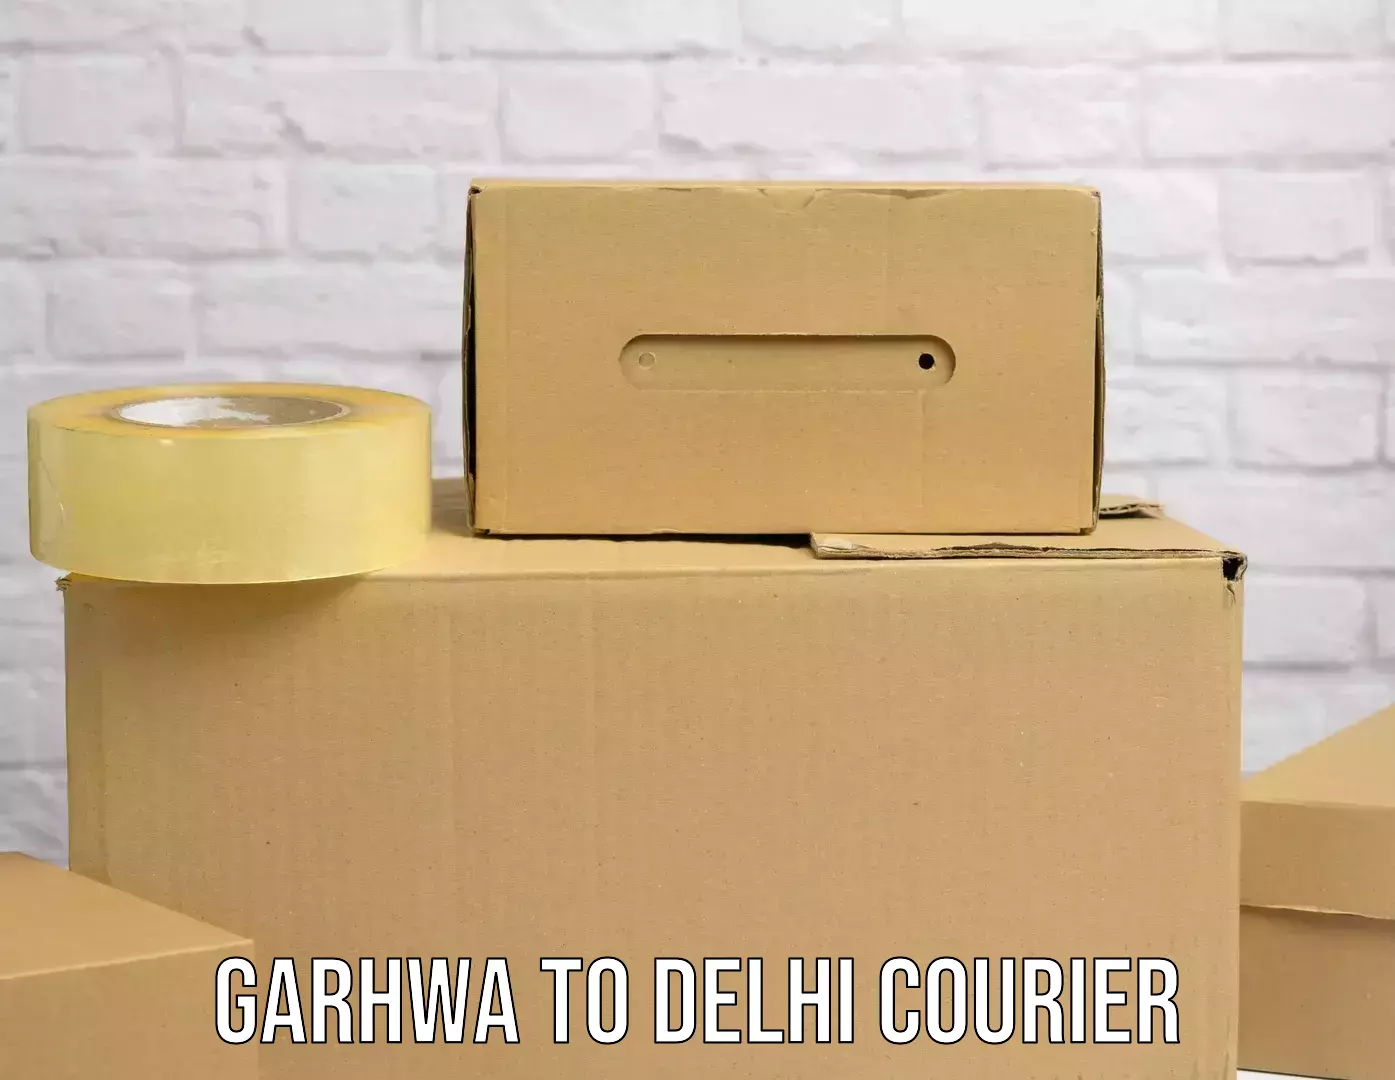 Efficient freight service Garhwa to Indraprastha